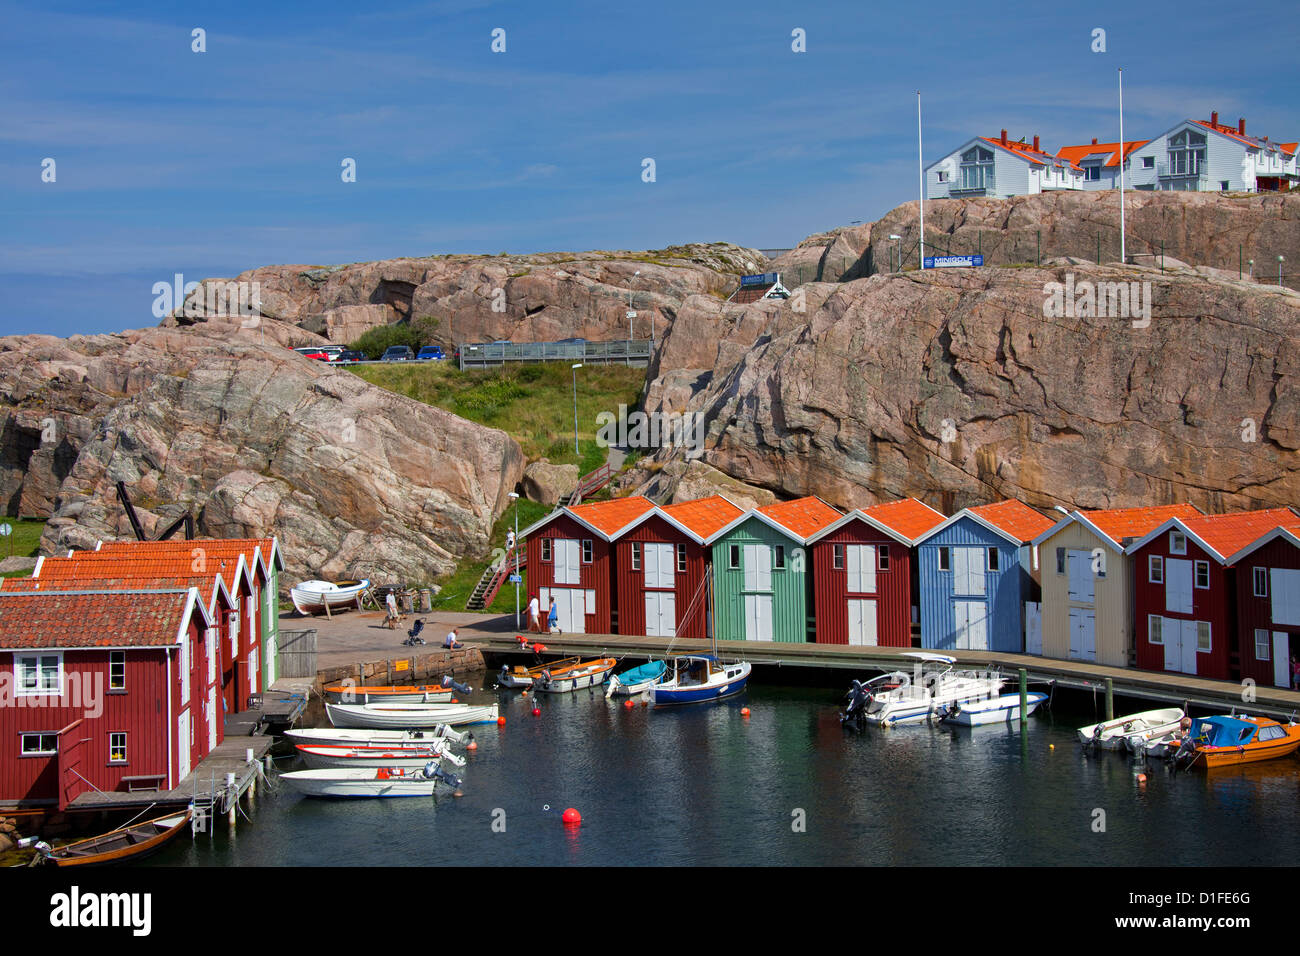 Bunten traditionellen Fischerhütten und Bootshäuser mit Booten entlang Holzmole im Smögen, Bohuslän, Schweden, Scandinavia Stockfoto